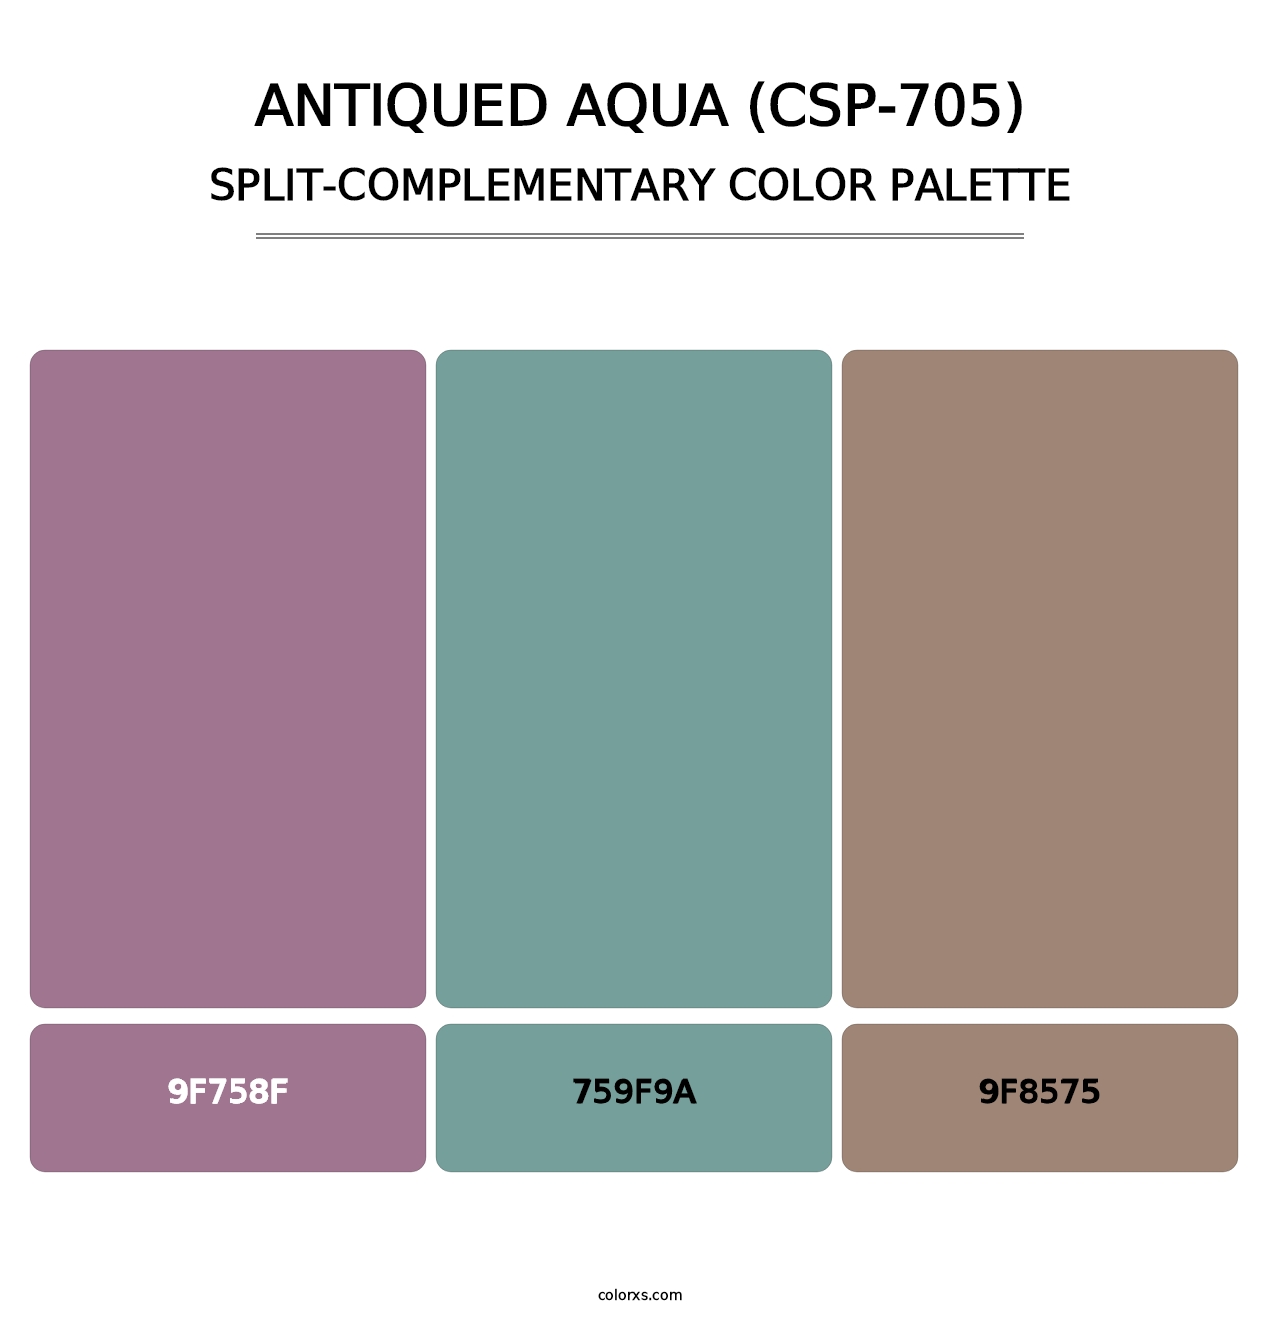 Antiqued Aqua (CSP-705) - Split-Complementary Color Palette